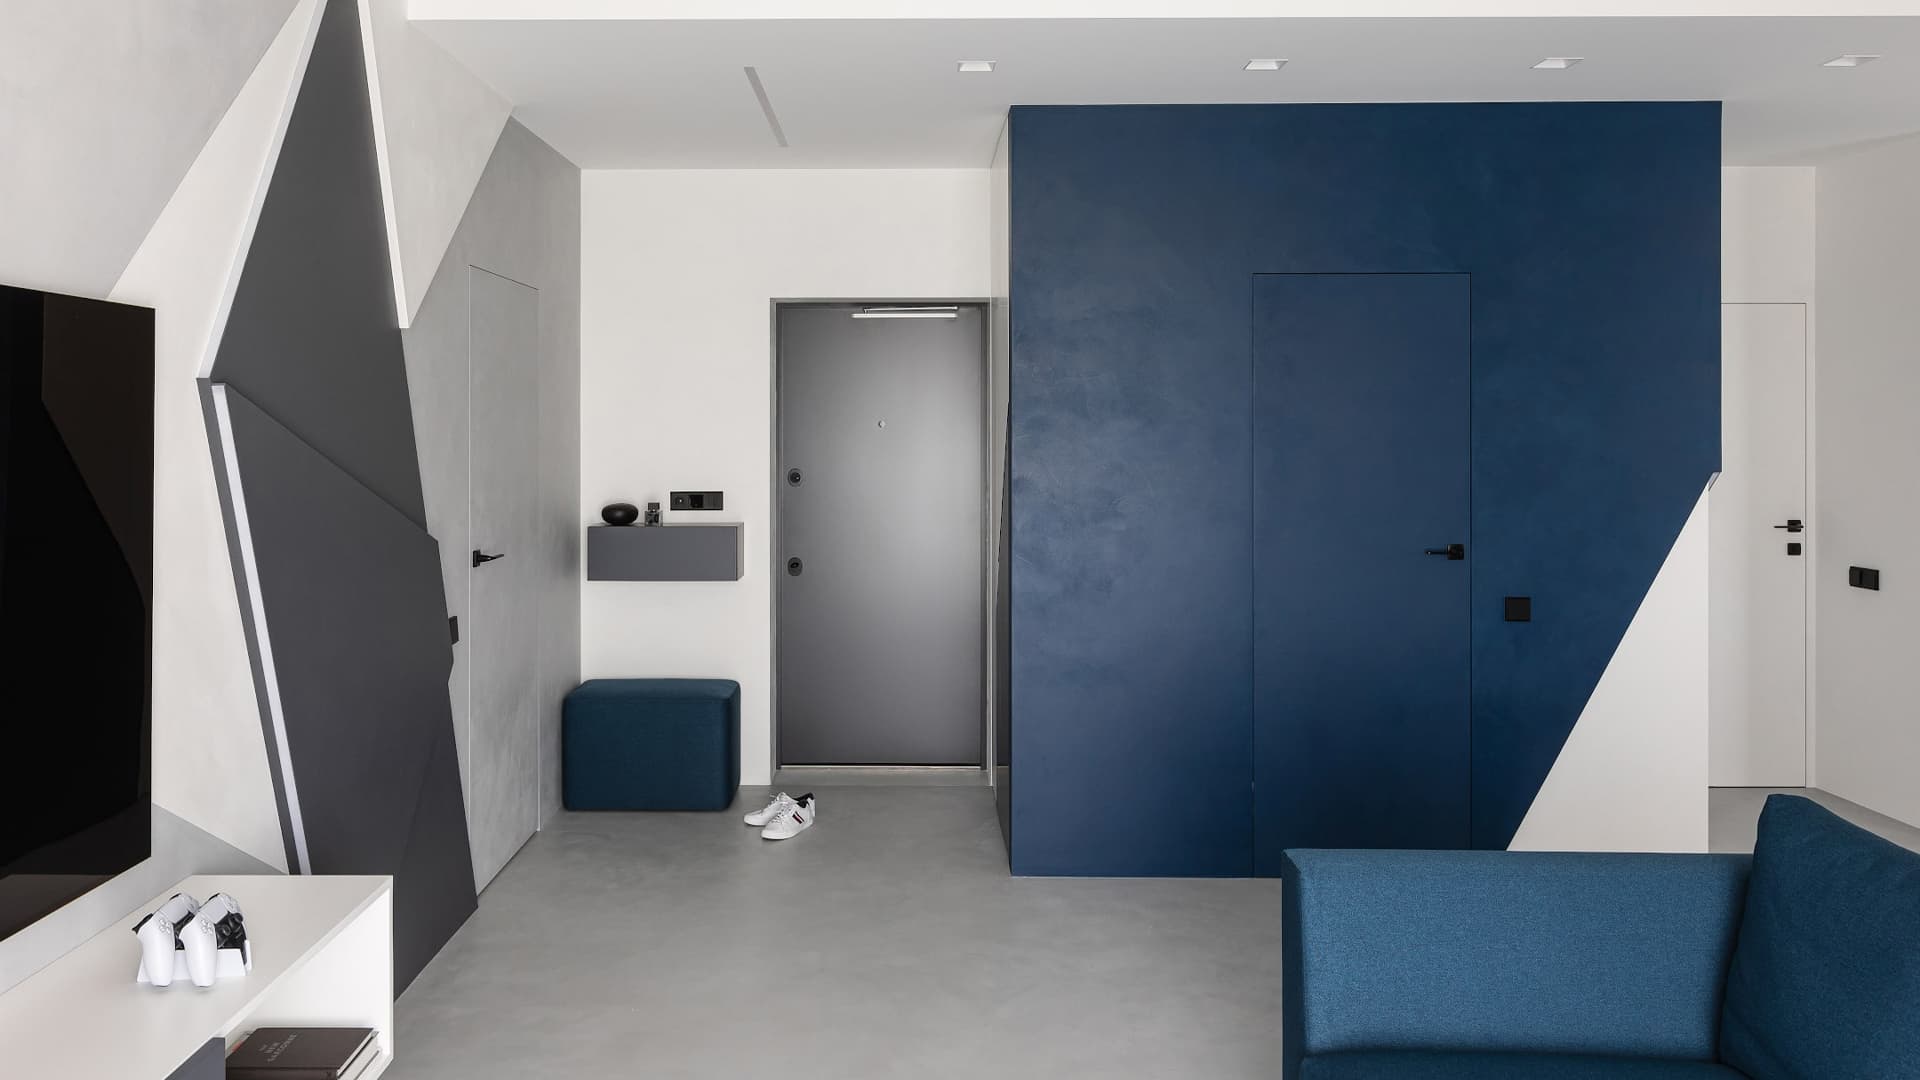 Глубокие серо-синие оттенки в интерьере квартиры для холостяка – проект студии IQHouse